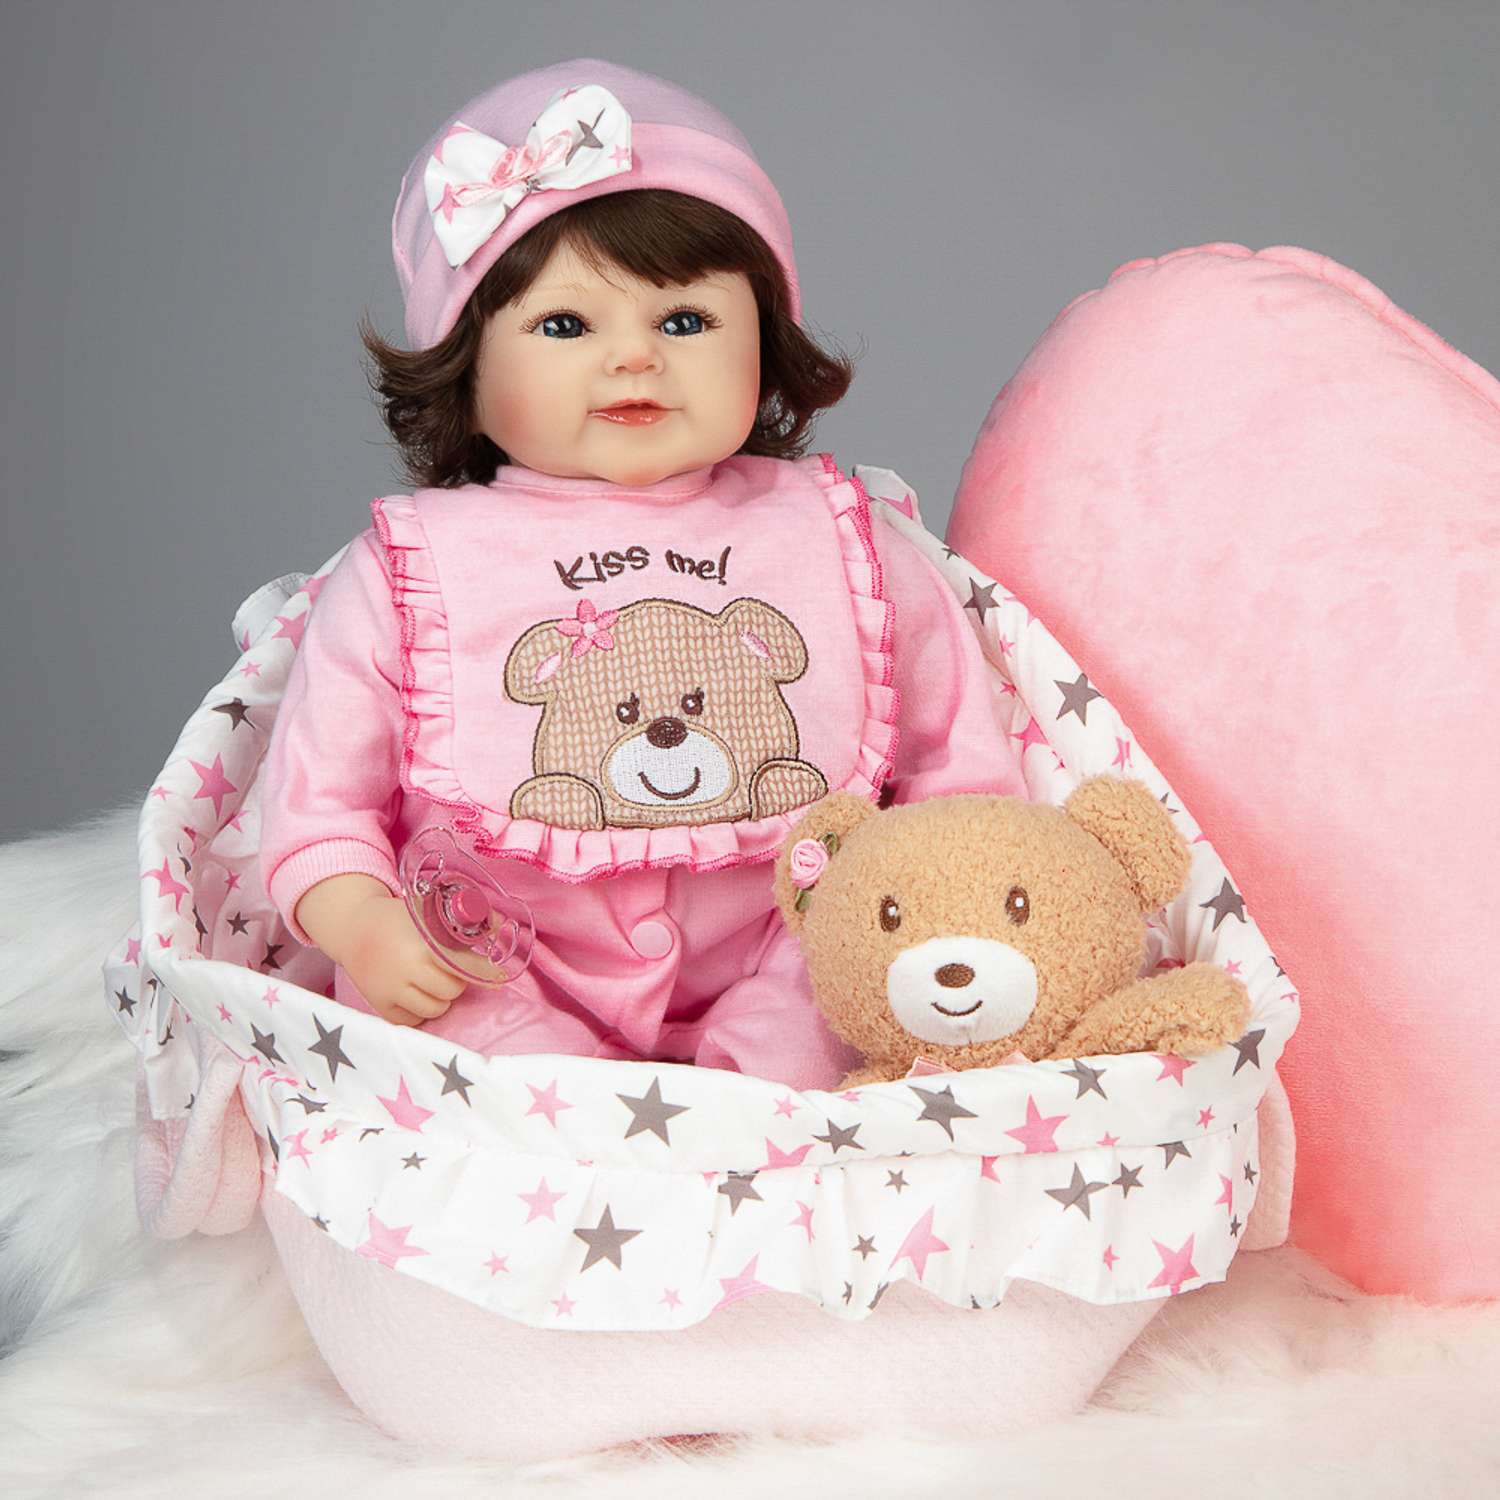 Кукла Реборн QA BABY Варвара девочка большая пупс набор игрушки для девочки 42 см 45008 - фото 3